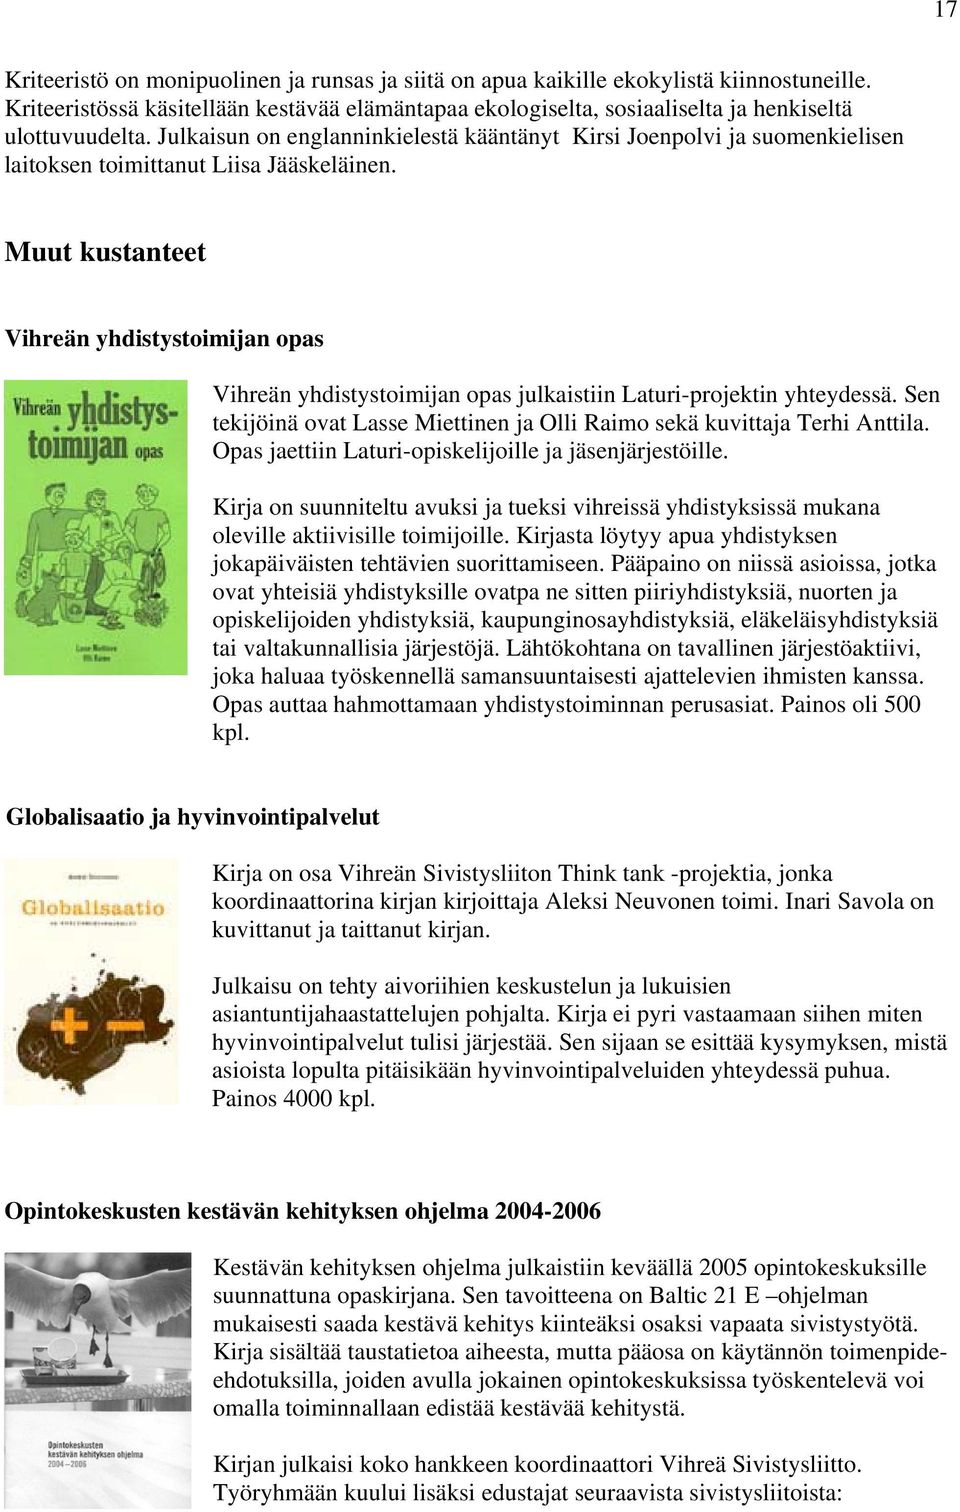 Muut kustanteet Vihreän yhdistystoimijan opas Vihreän yhdistystoimijan opas julkaistiin Laturi-projektin yhteydessä. Sen tekijöinä ovat Lasse Miettinen ja Olli Raimo sekä kuvittaja Terhi Anttila.